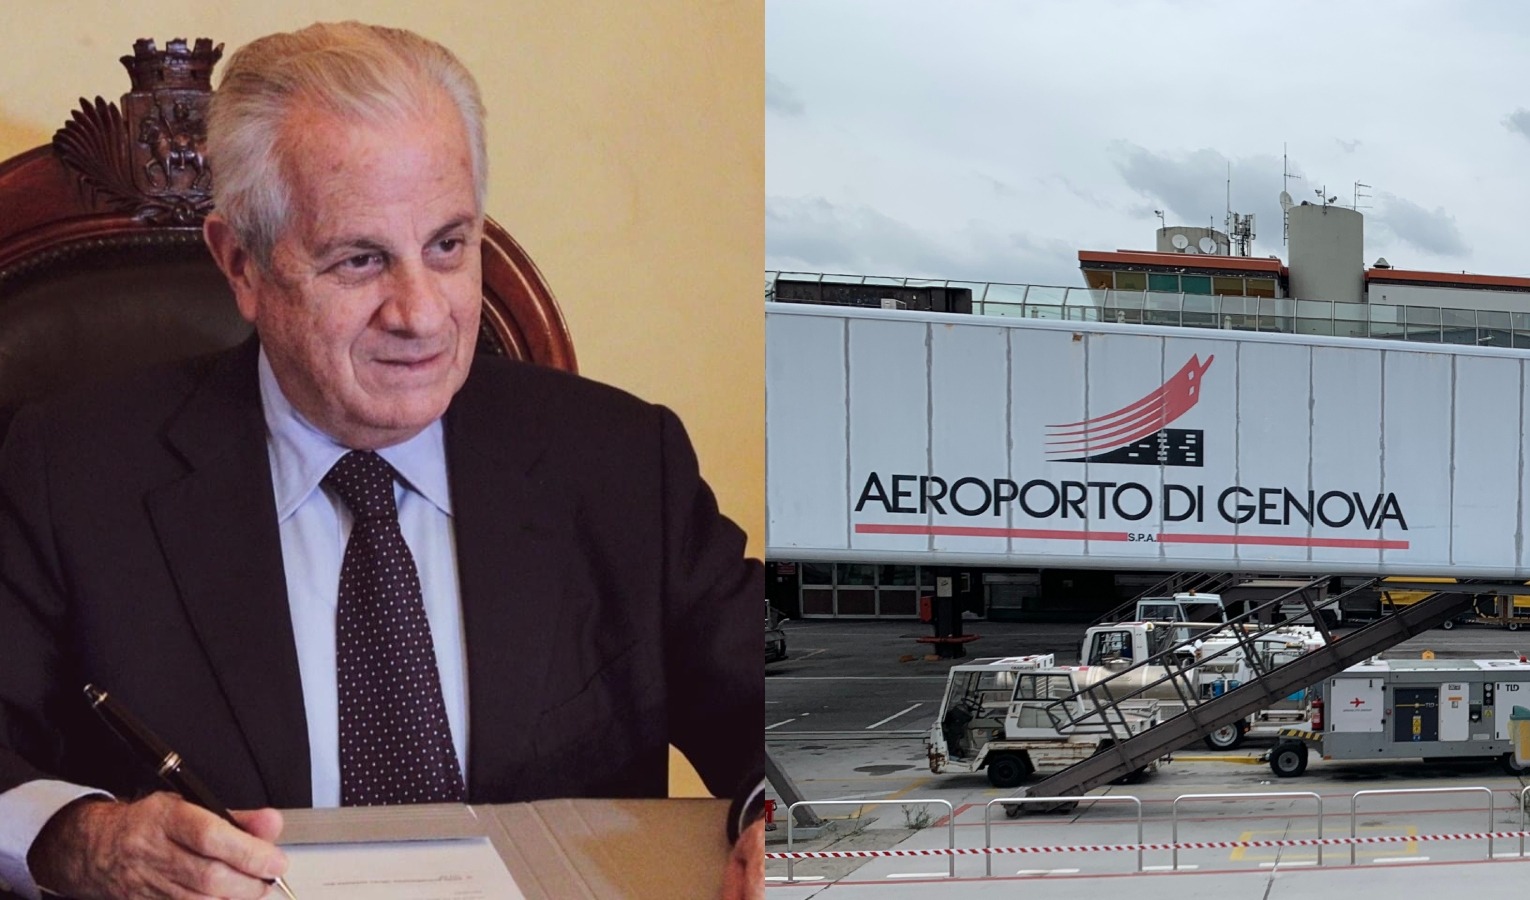 Aeroporto di Genova, Scajola sponsor di Nizza: un cortocircuito?